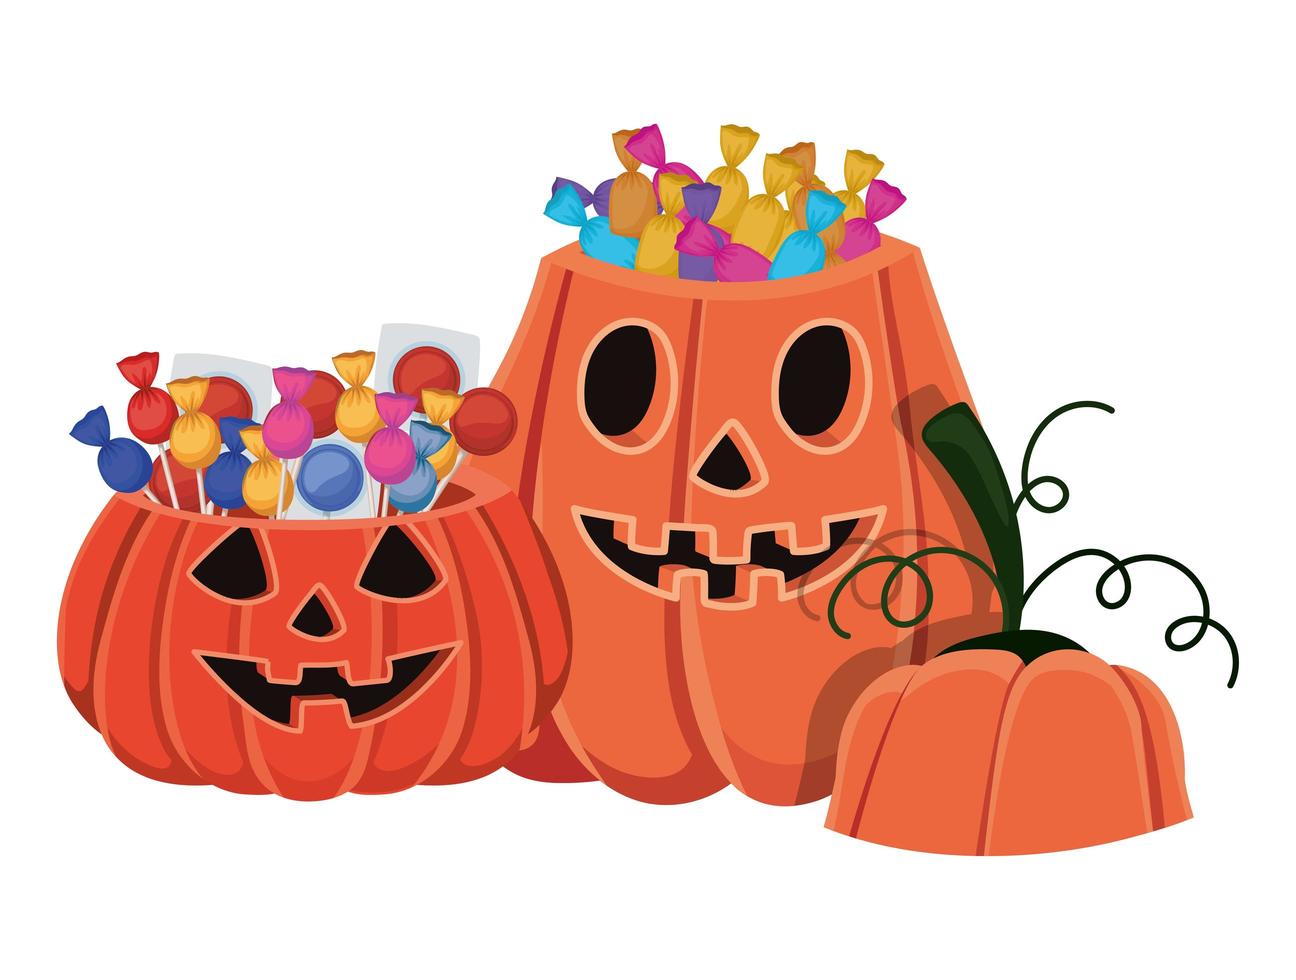 Halloween pumpkins cartoons with candies design vector